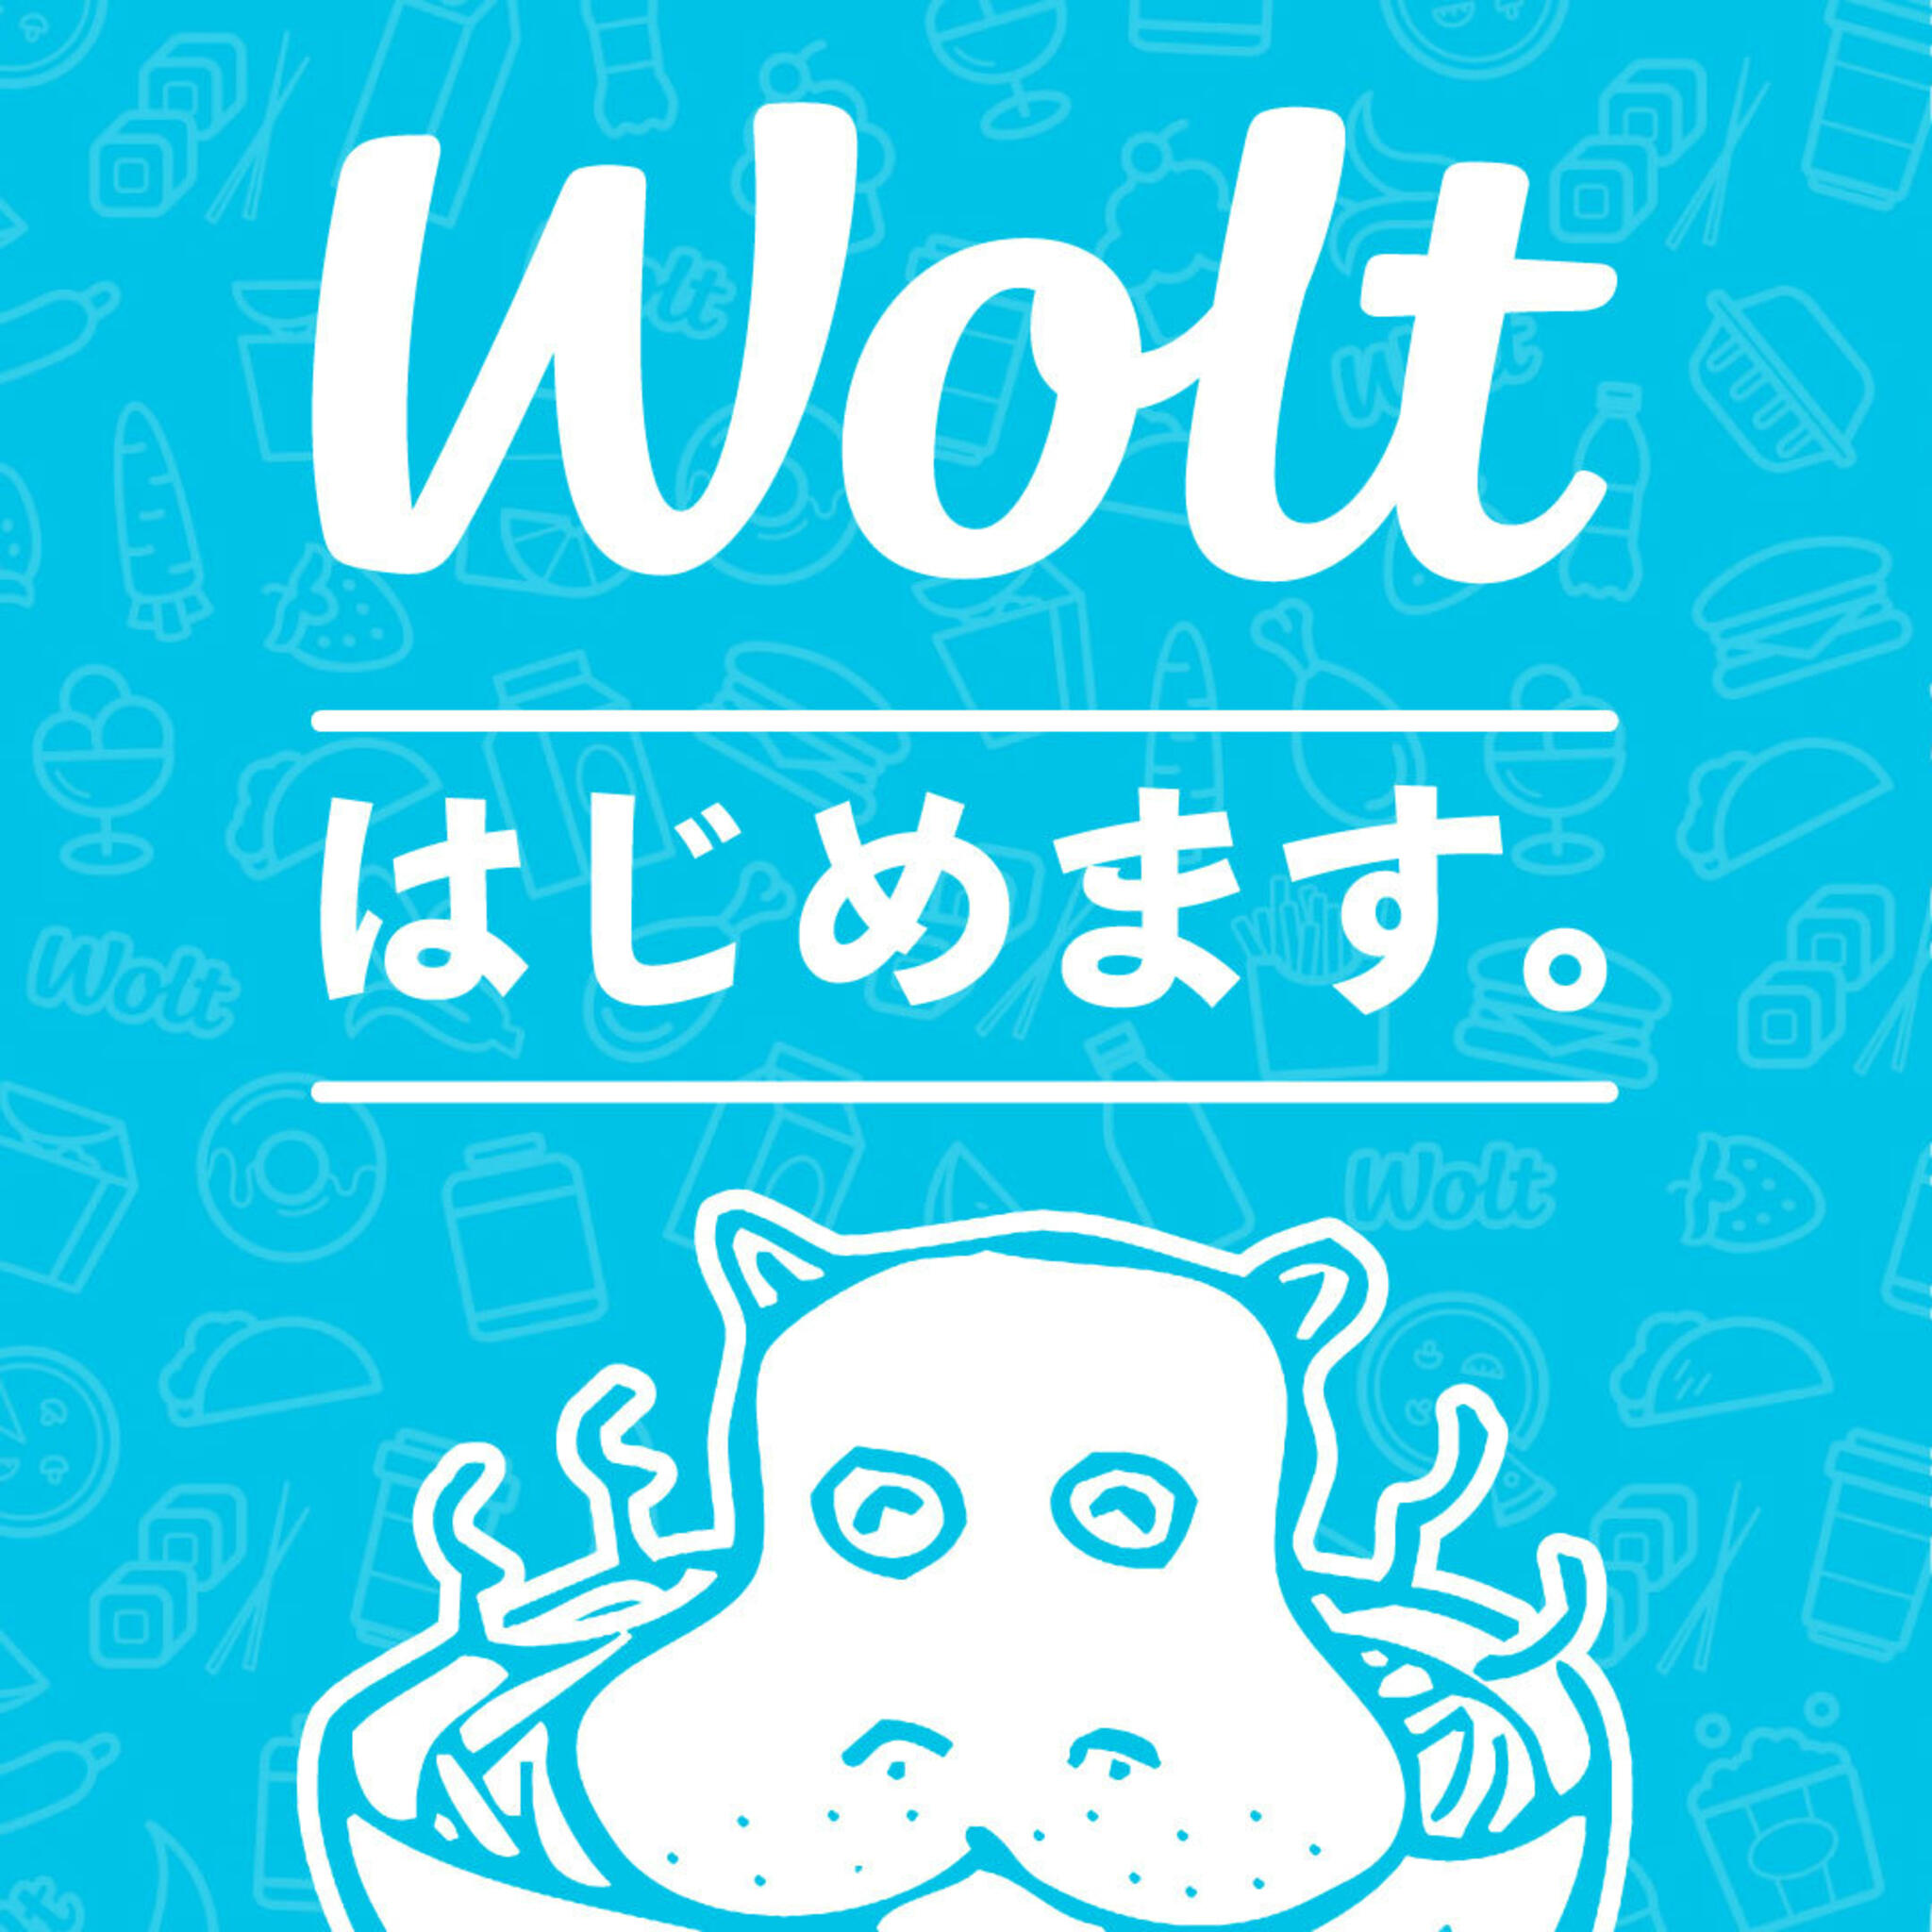 かばのおうどん 横浜元町本店からのお知らせ(デリバリー「Wolt（ウォルト）」始めます。)に関する写真